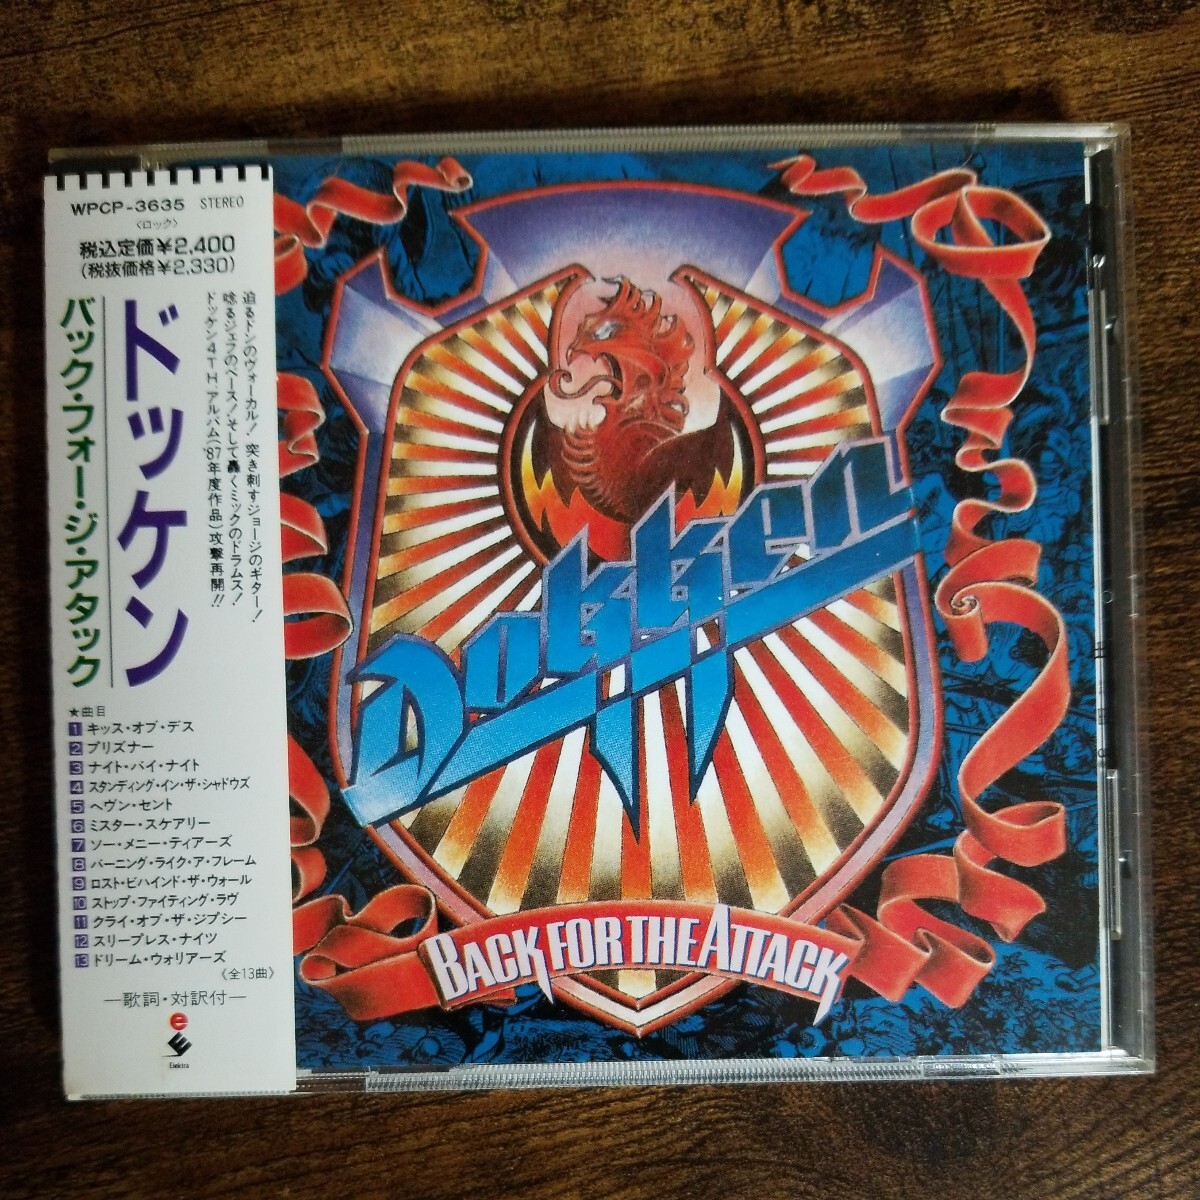 【 японское издание CD... идет в комплекте 】...　 задний  *  ... *  ... *  ...　DOKKEN　BACK FOR THE ATTACK　1990 год  внутри страны ...　 контрольный   номер J